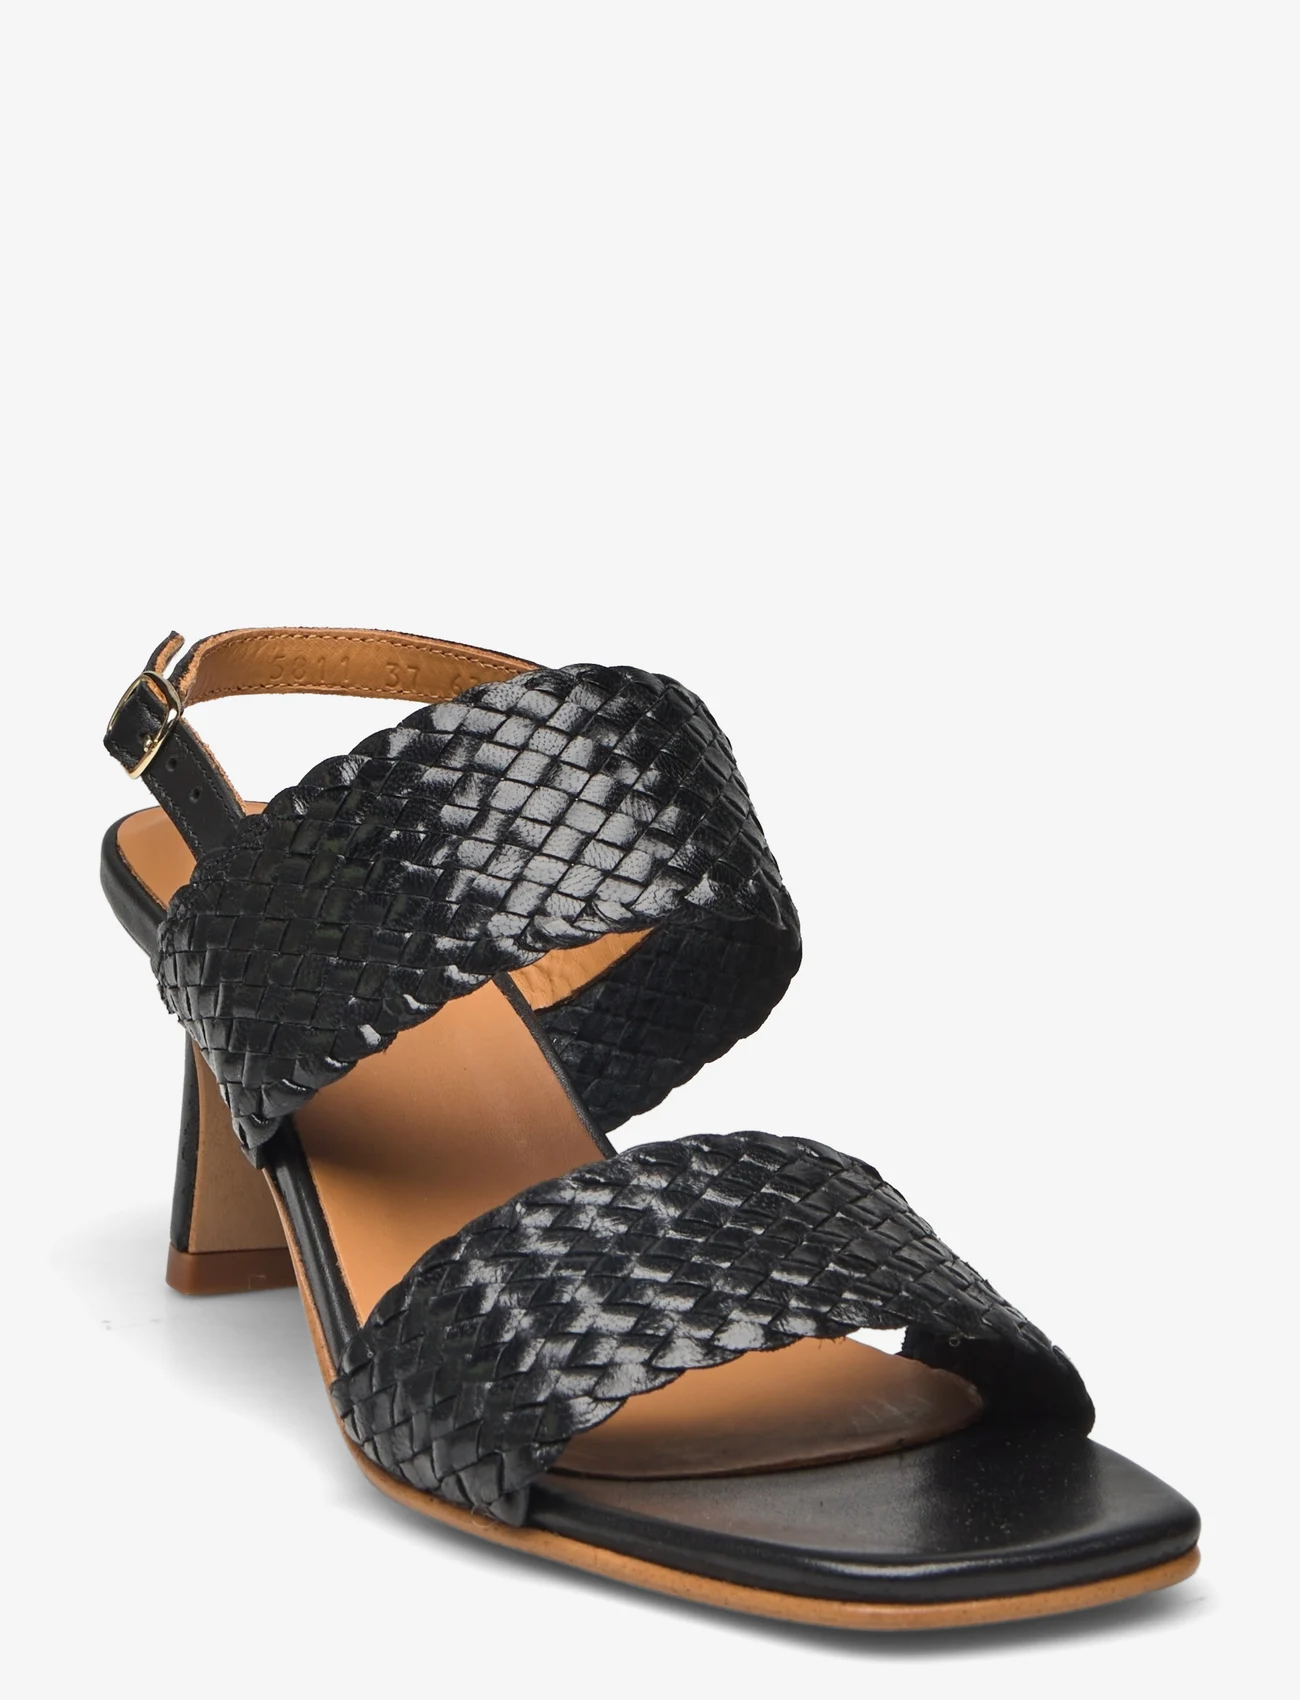 ANGULUS - Sandals - Block heels - sandały na obcasie - 2072/1604 black/black - 0